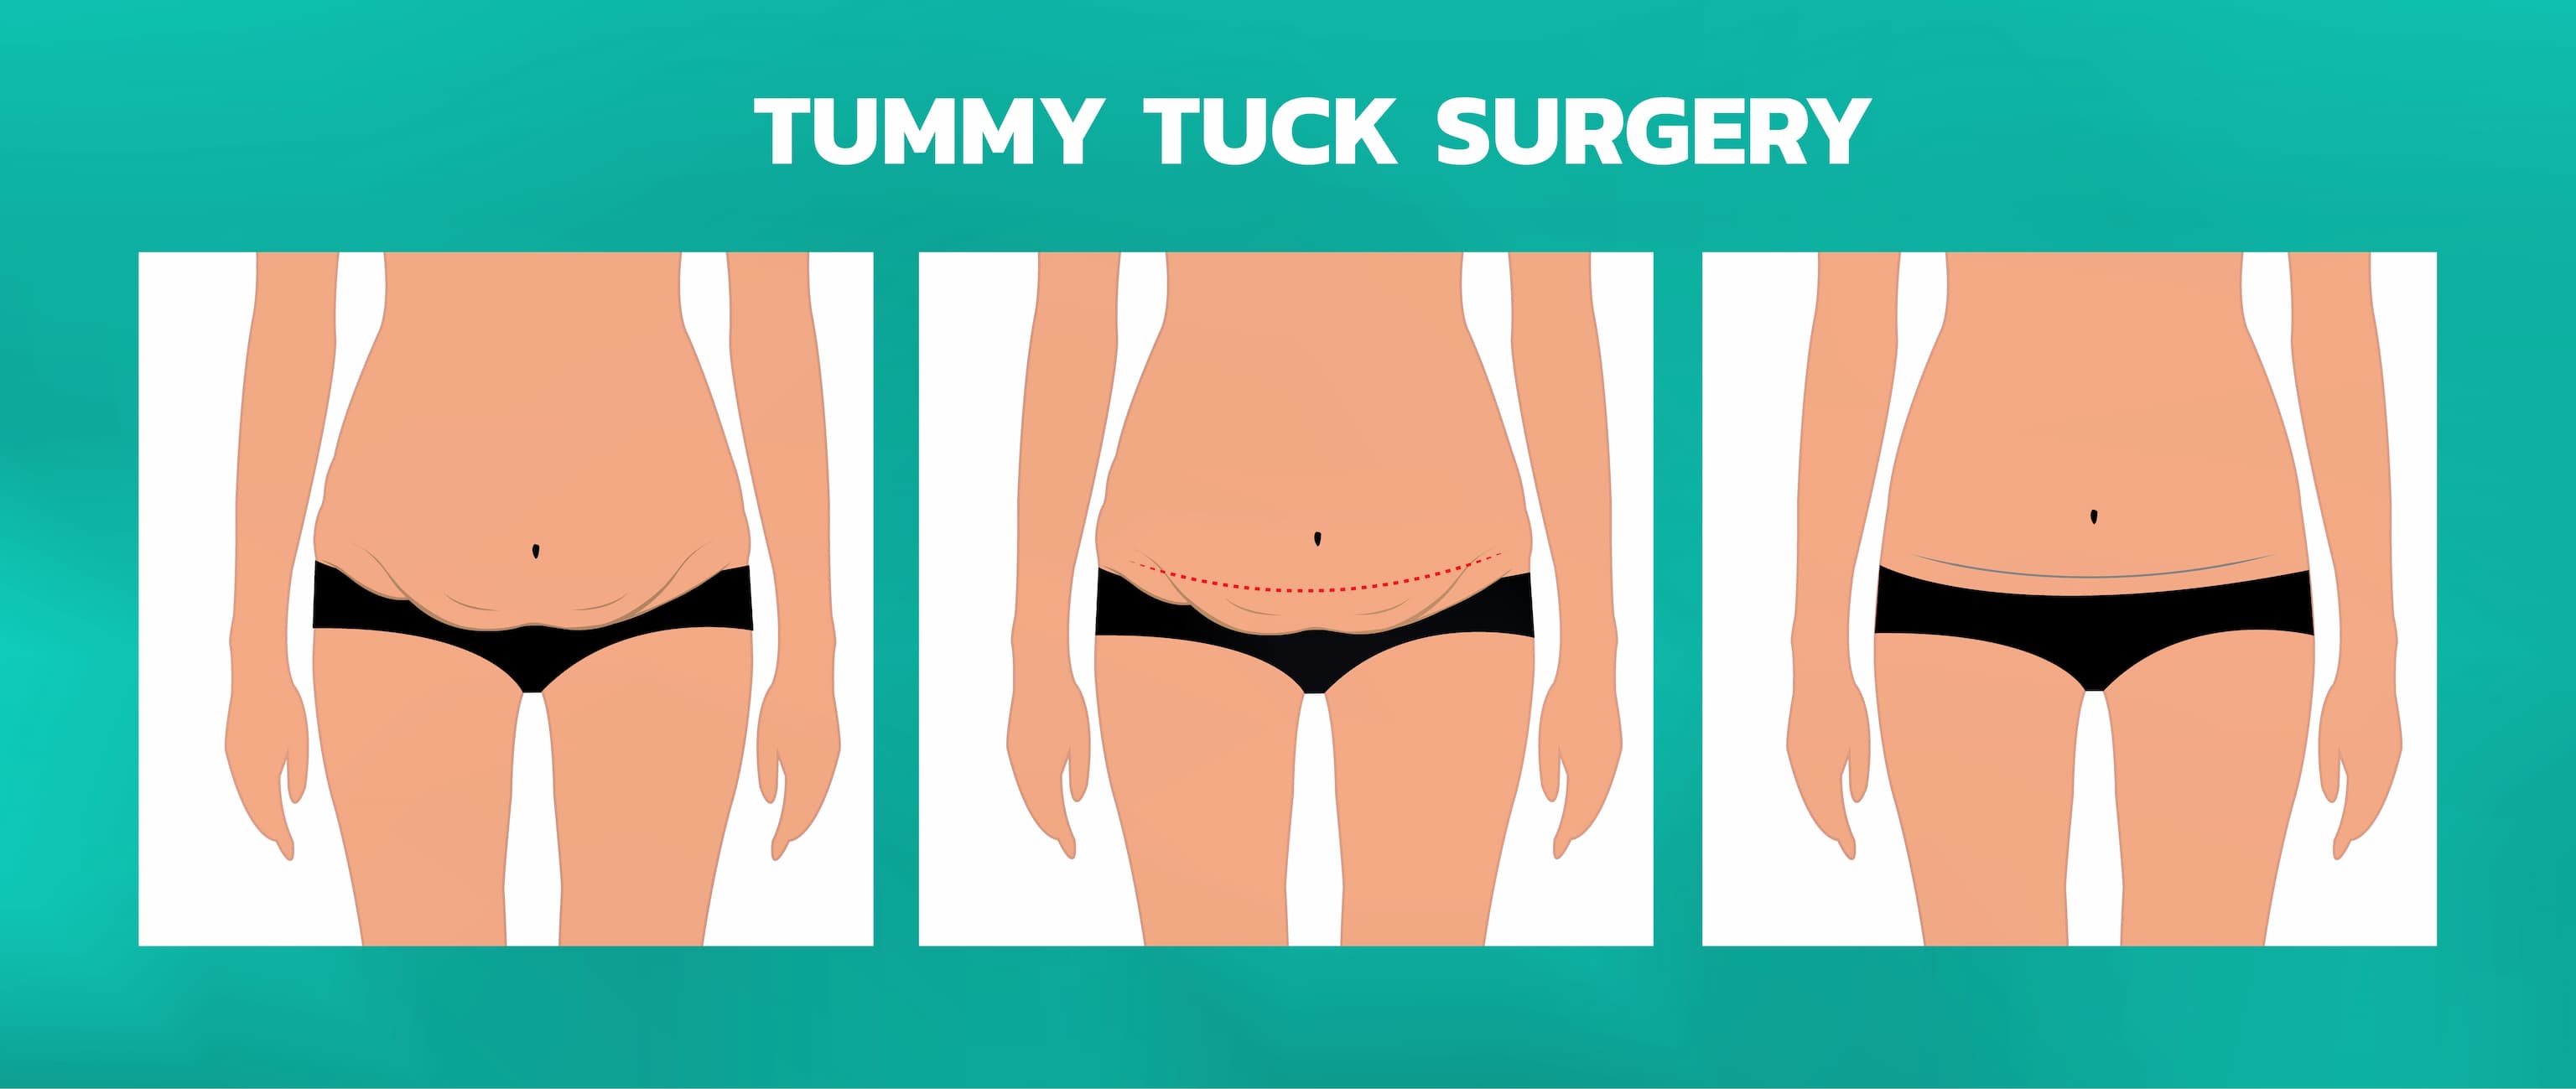 Turkiye tummy tuck surgery